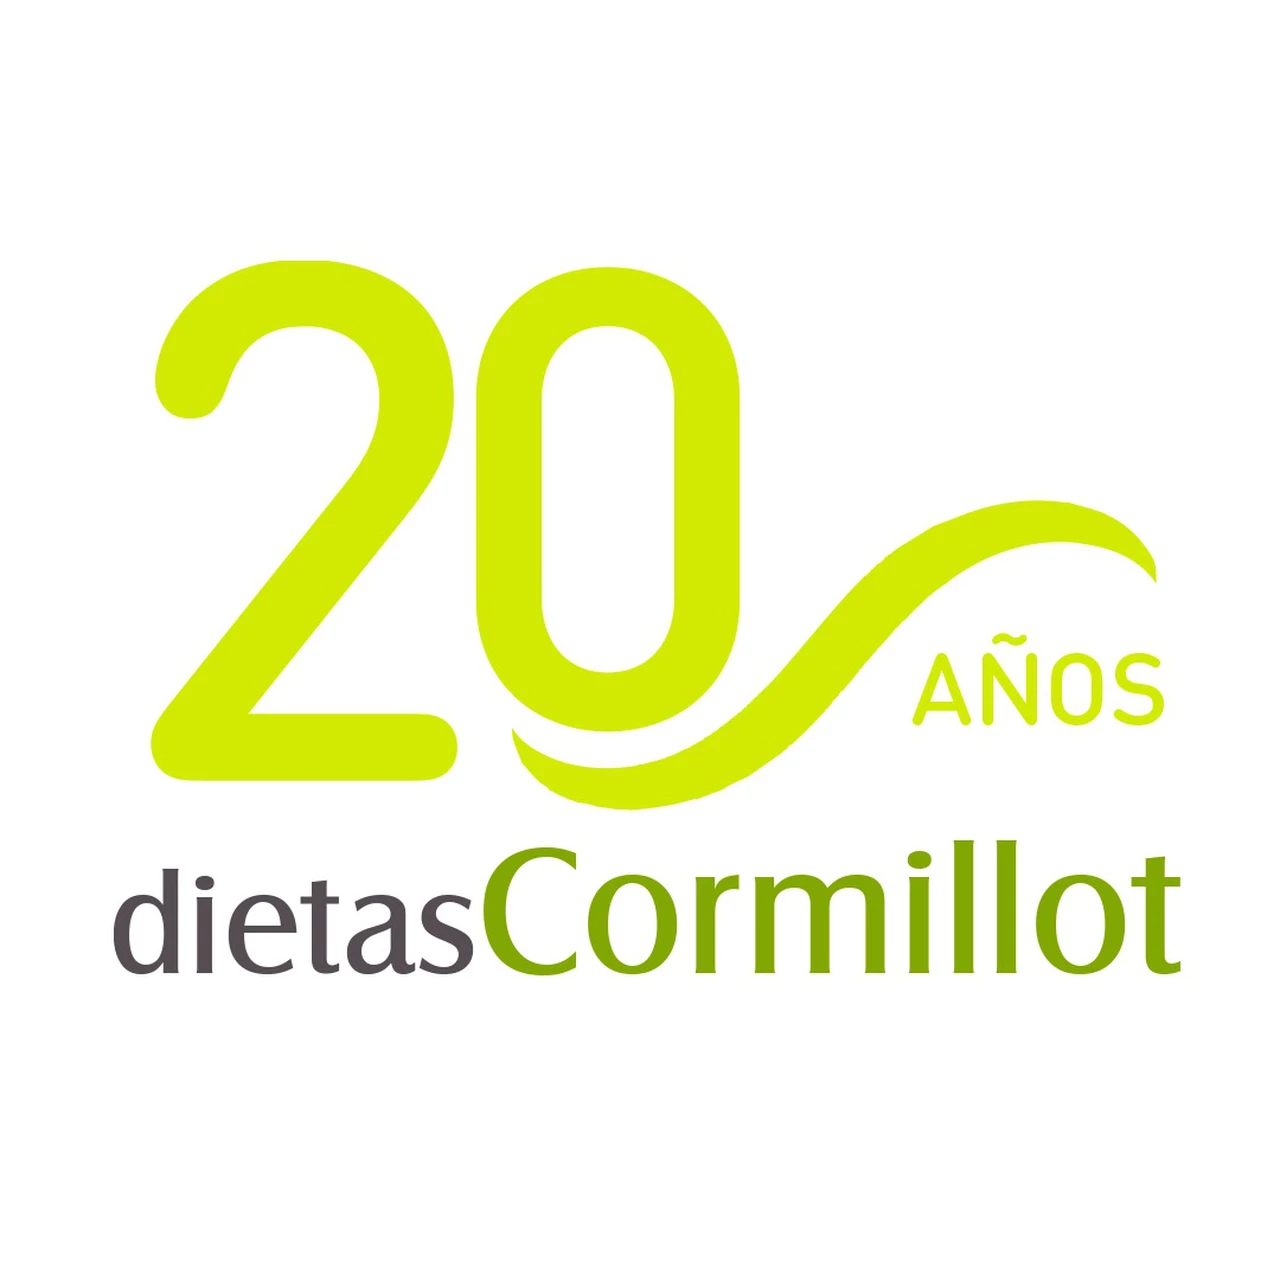 DietasCormillot.com cumple 20 años apostando a generar hábitos saludables y cambios de vida